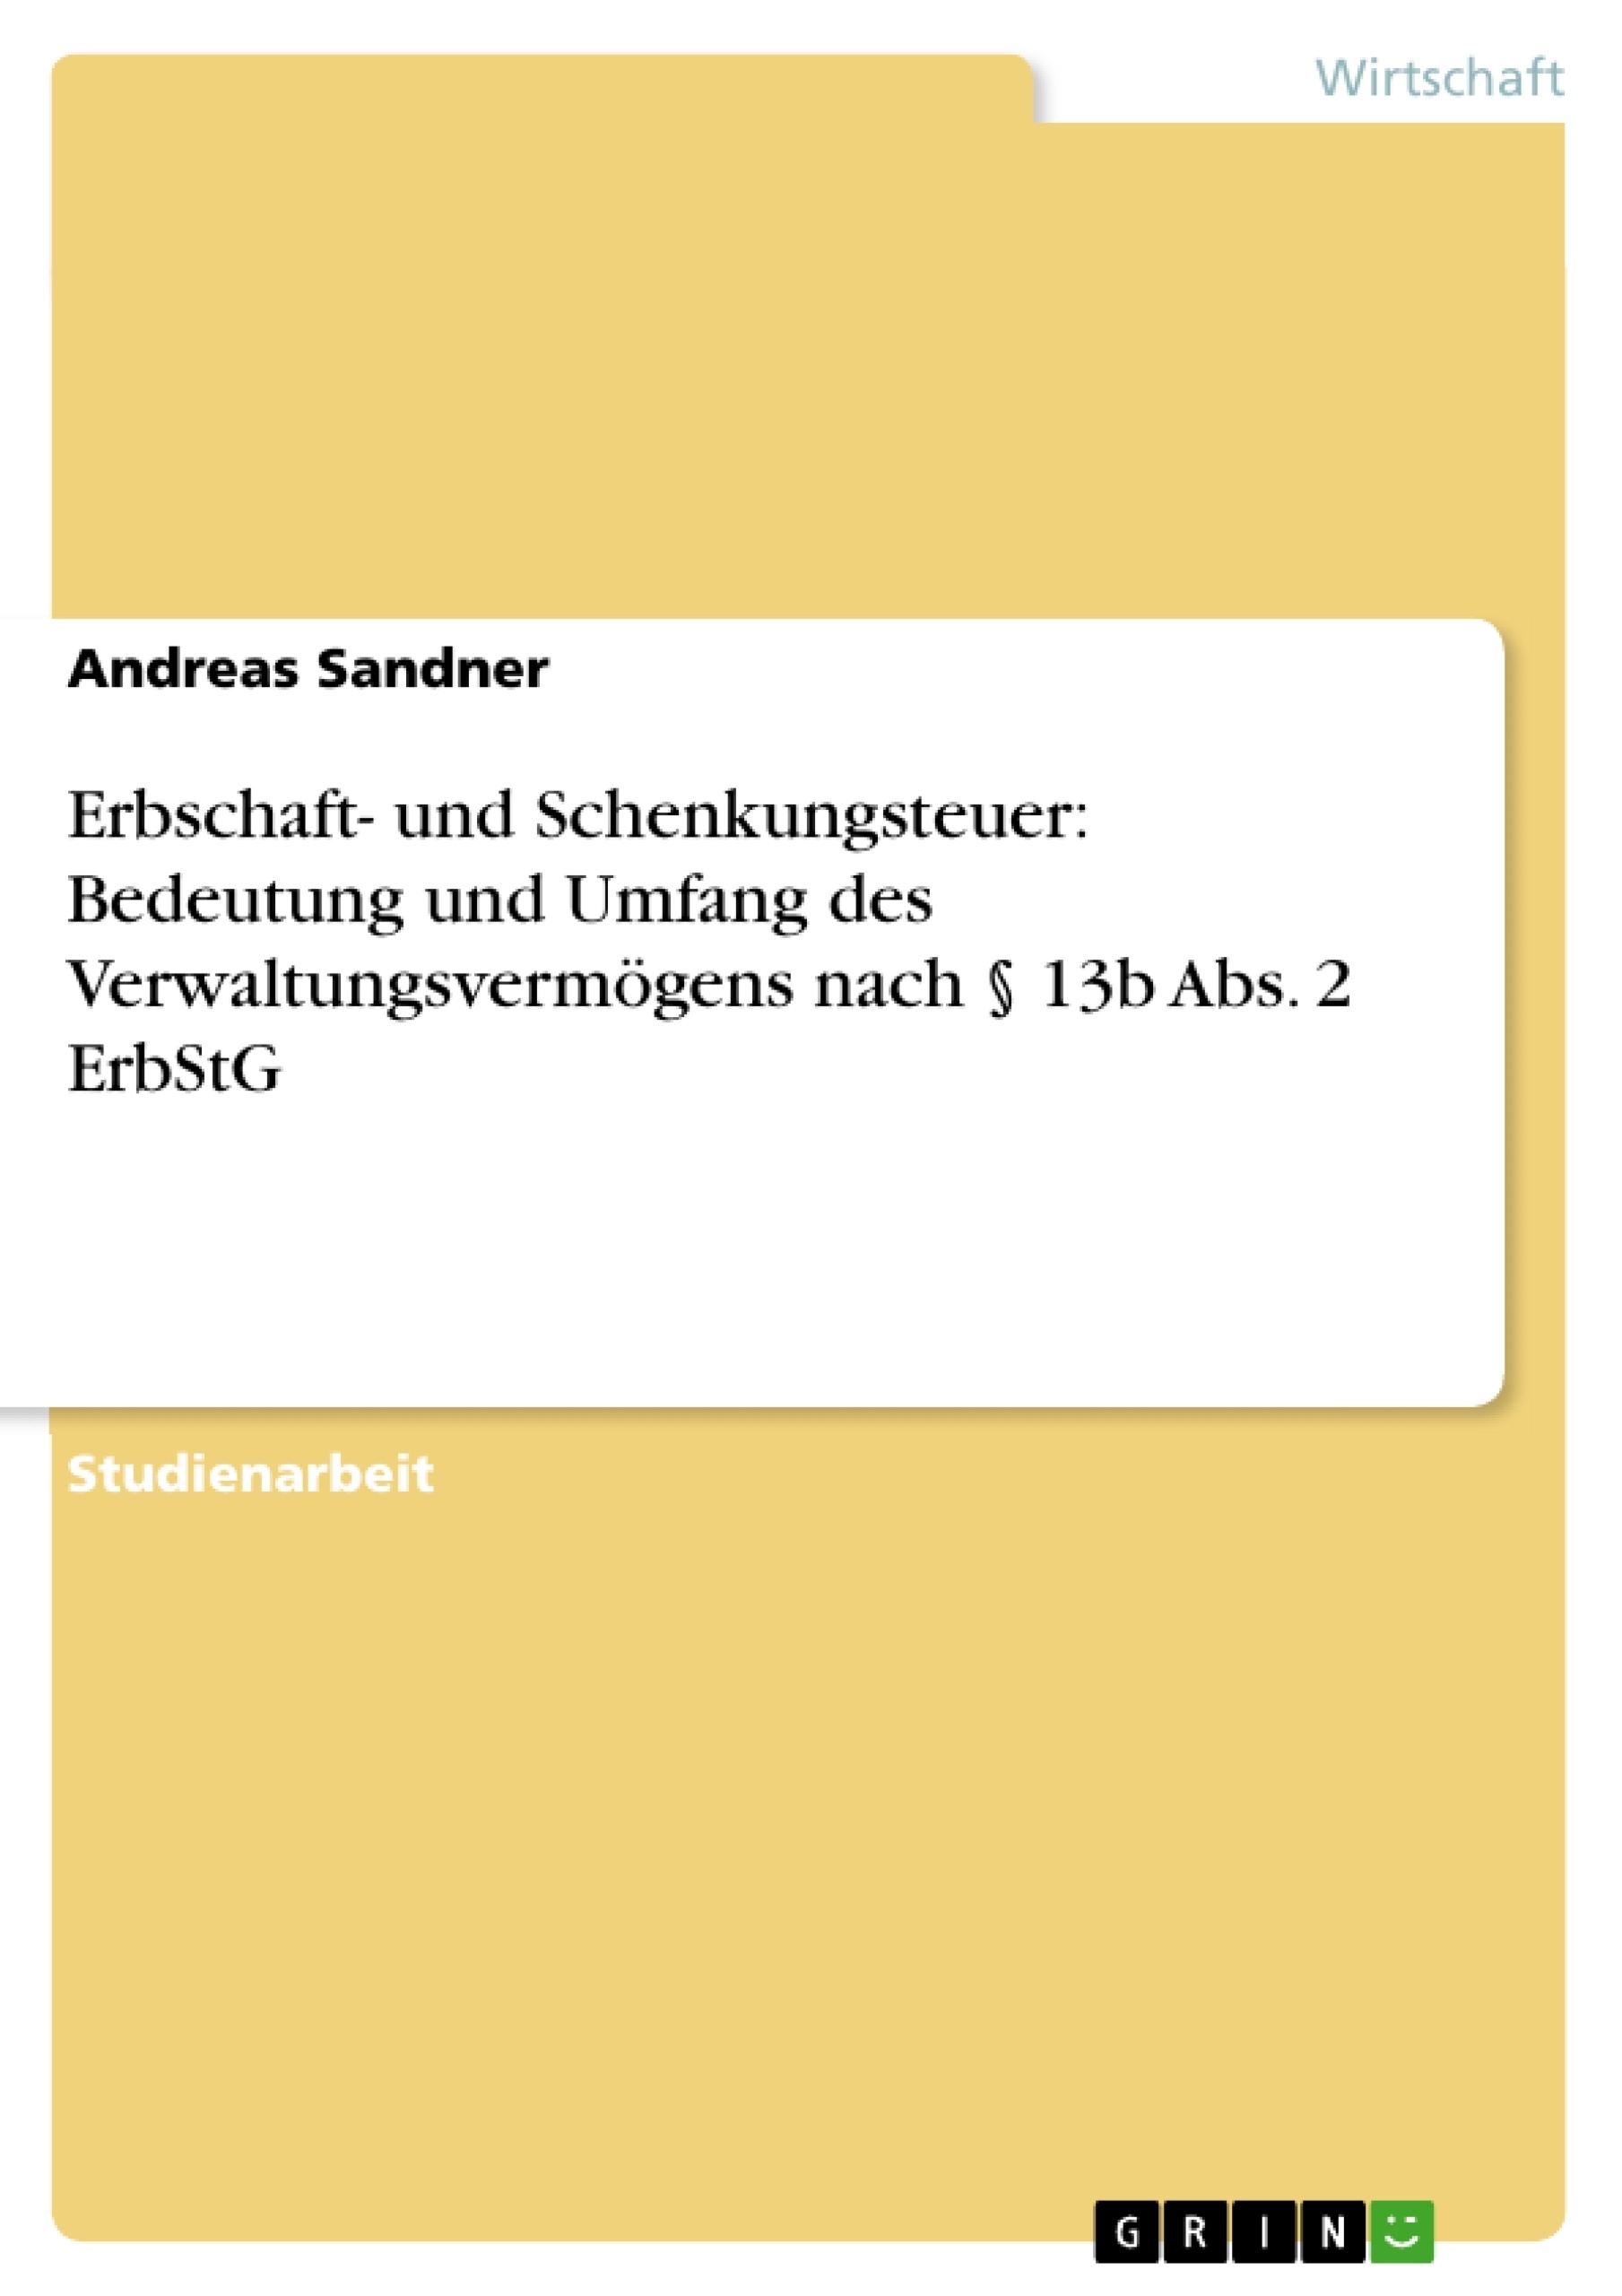 Title: Erbschaft- und Schenkungsteuer: Bedeutung und Umfang des Verwaltungsvermögens nach § 13b Abs. 2 ErbStG